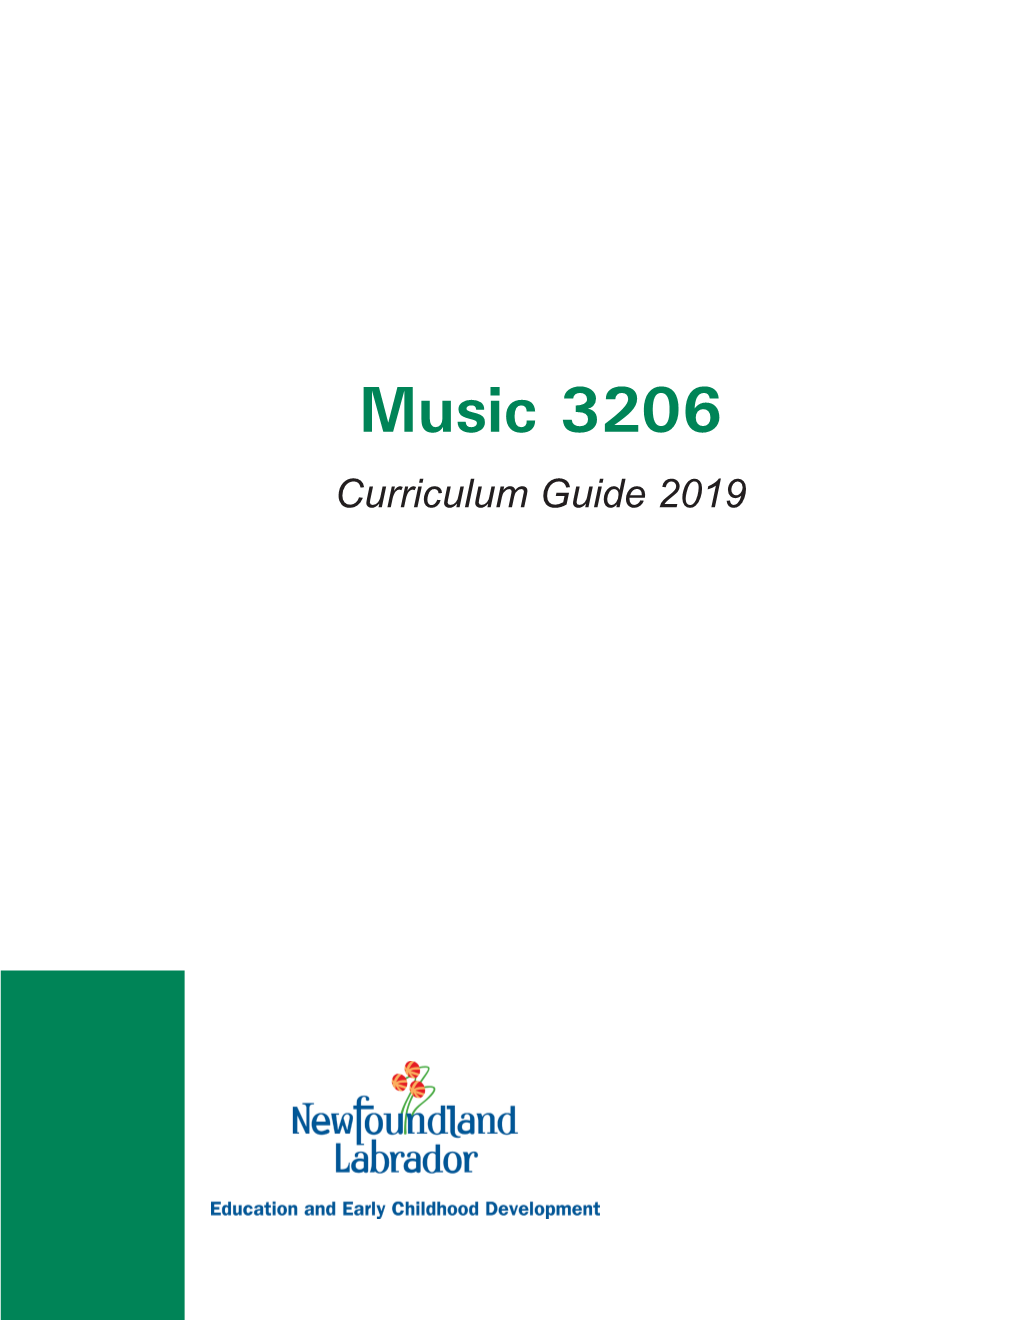 Music 3206 Curriculum Guide 2019